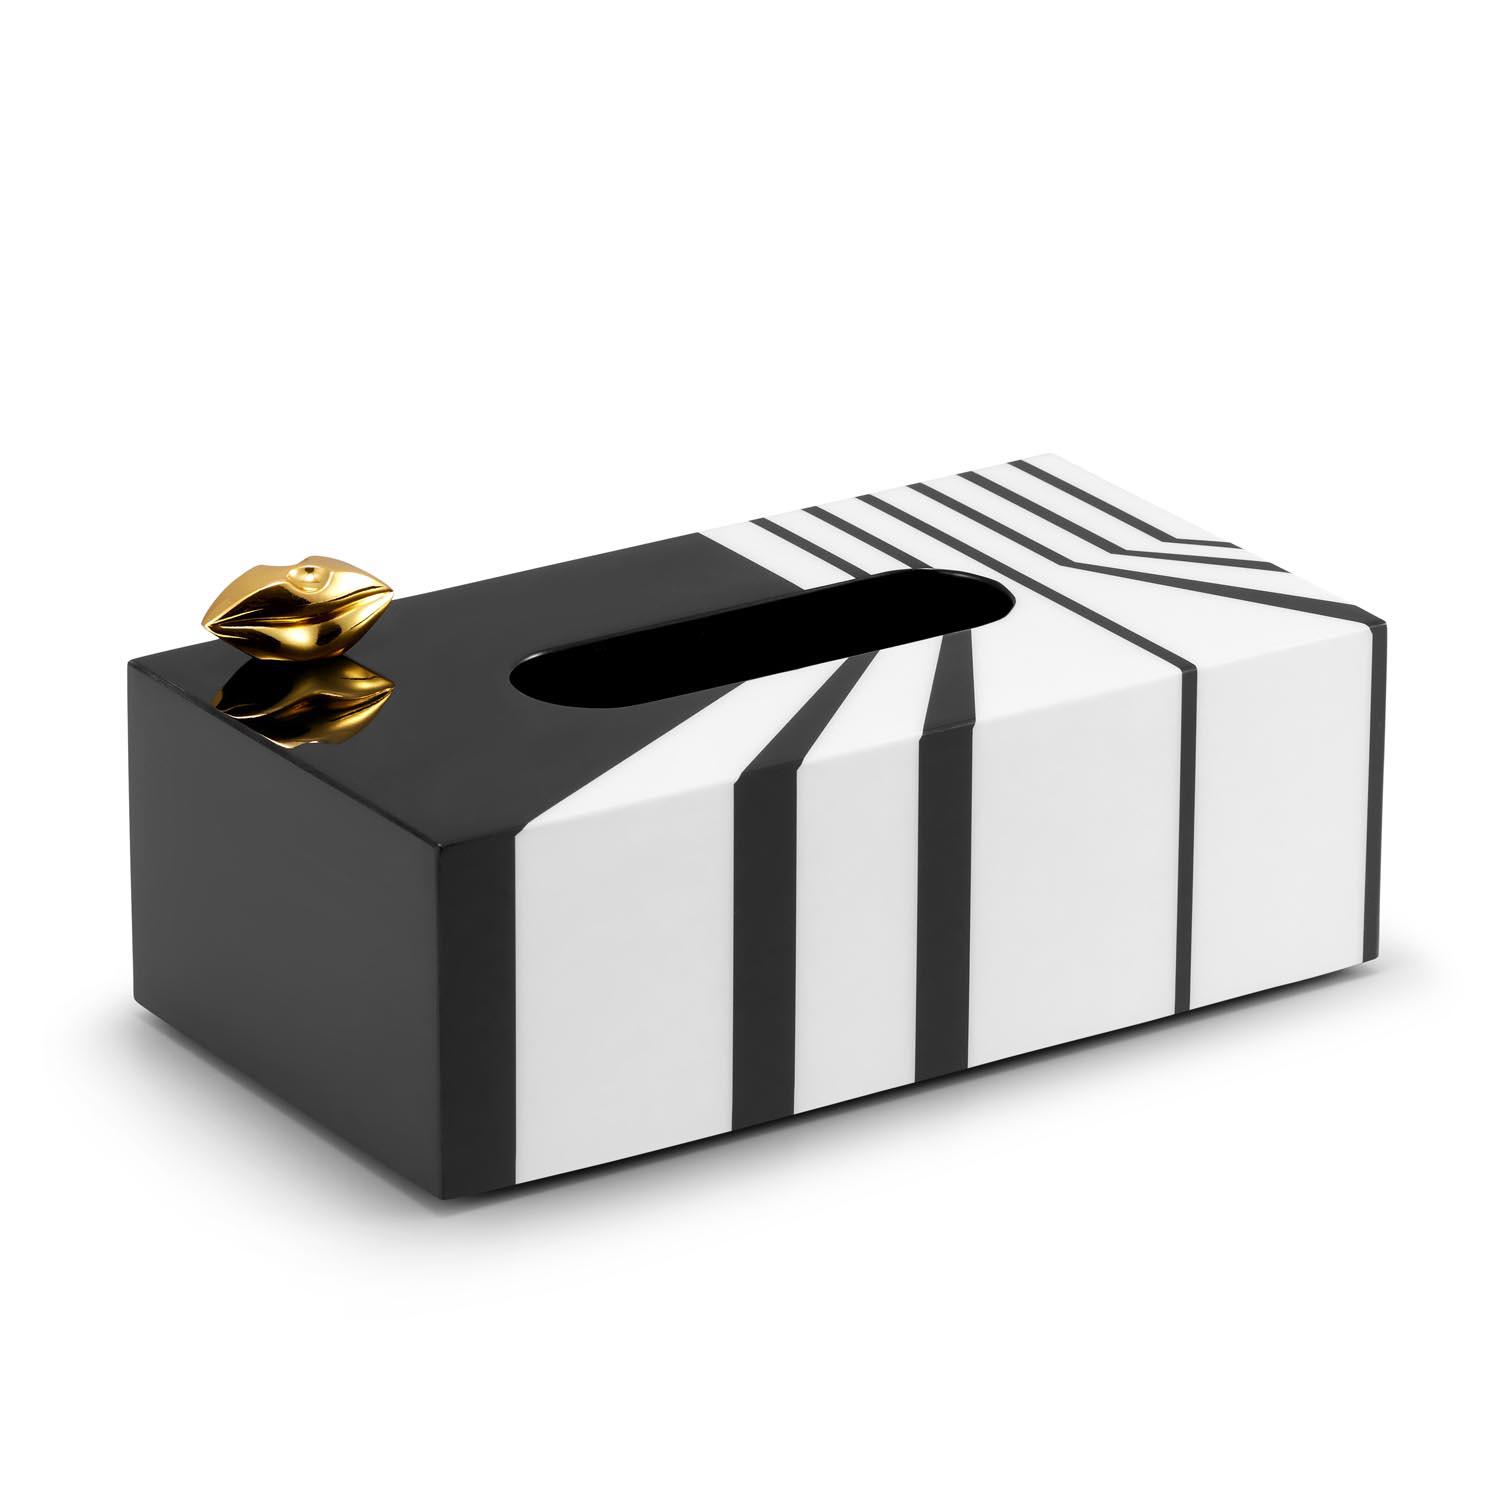 STRIPES LIPS - pudełko na chusteczki w czarno - białe paski ze złotymi ustami